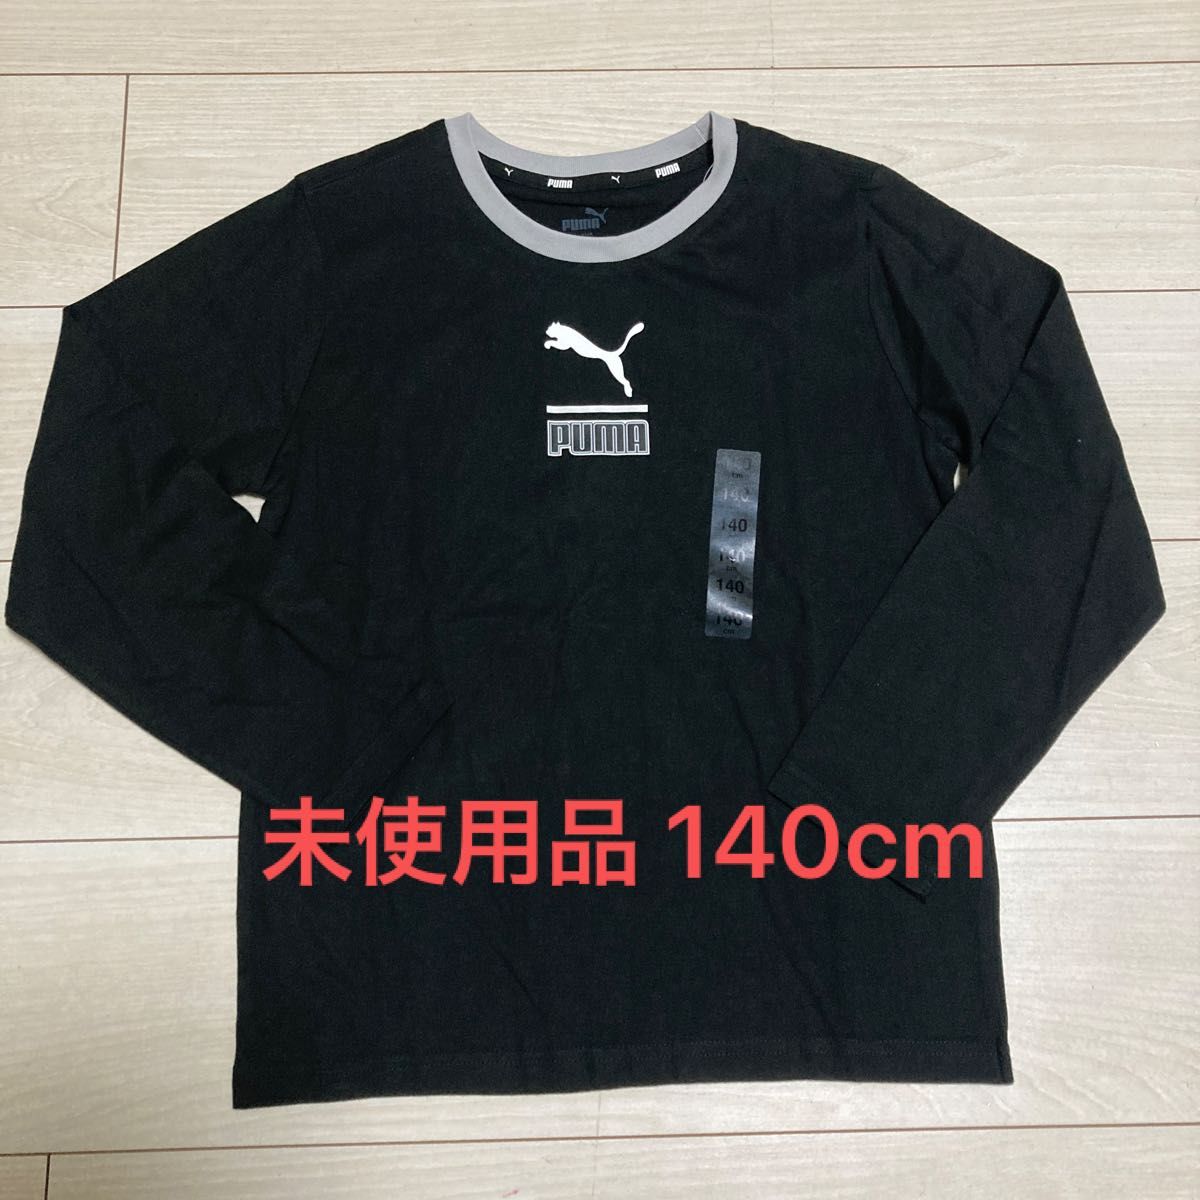 【未使用品】PUMA ロンT 長袖Tシャツ 140cm